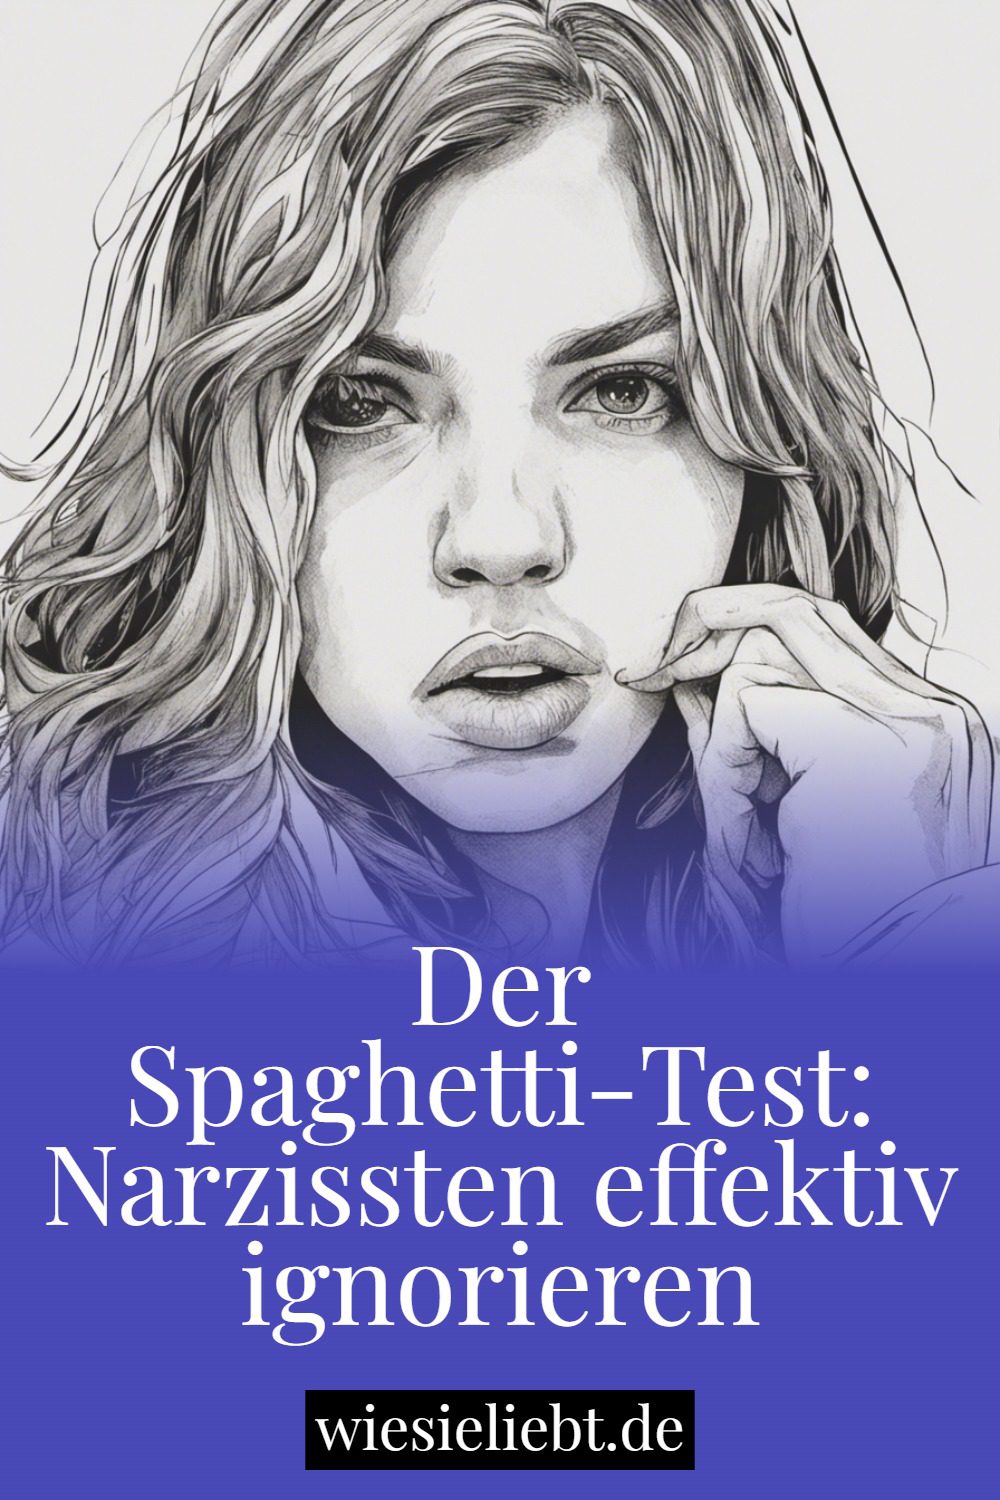 Der Spaghetti-Test: Narzissten effektiv ignorieren